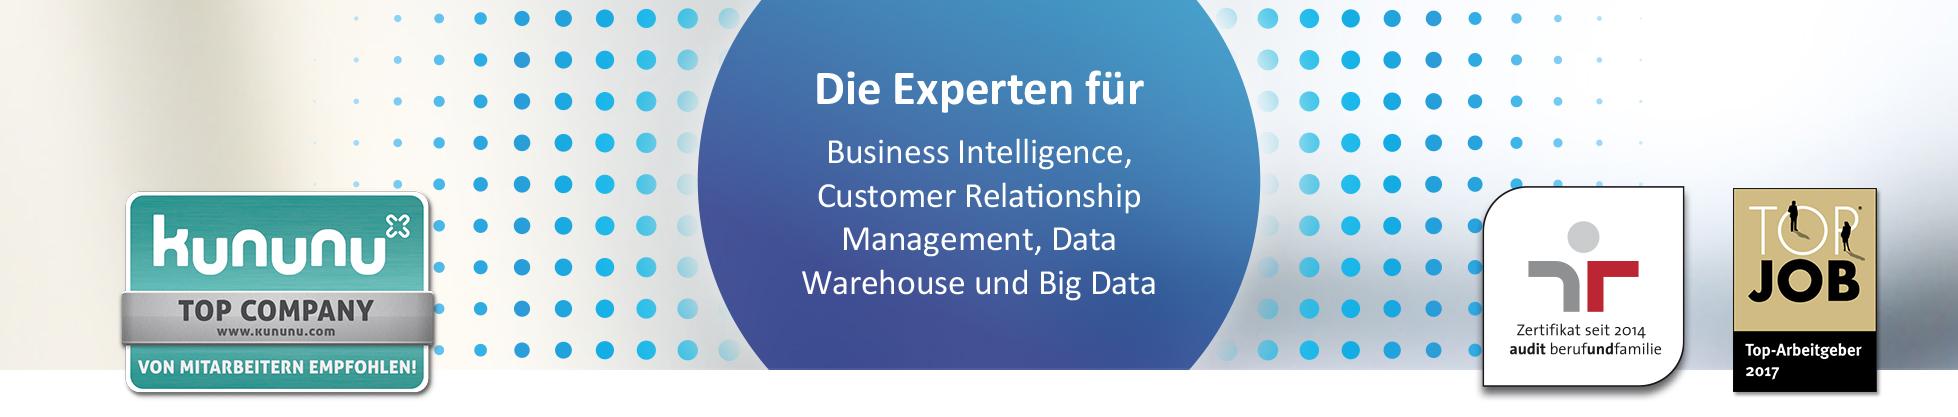 b.telligent: Die Experten für Business Intelligence, Customer Relationship Management, Data Warehouse und Big Data